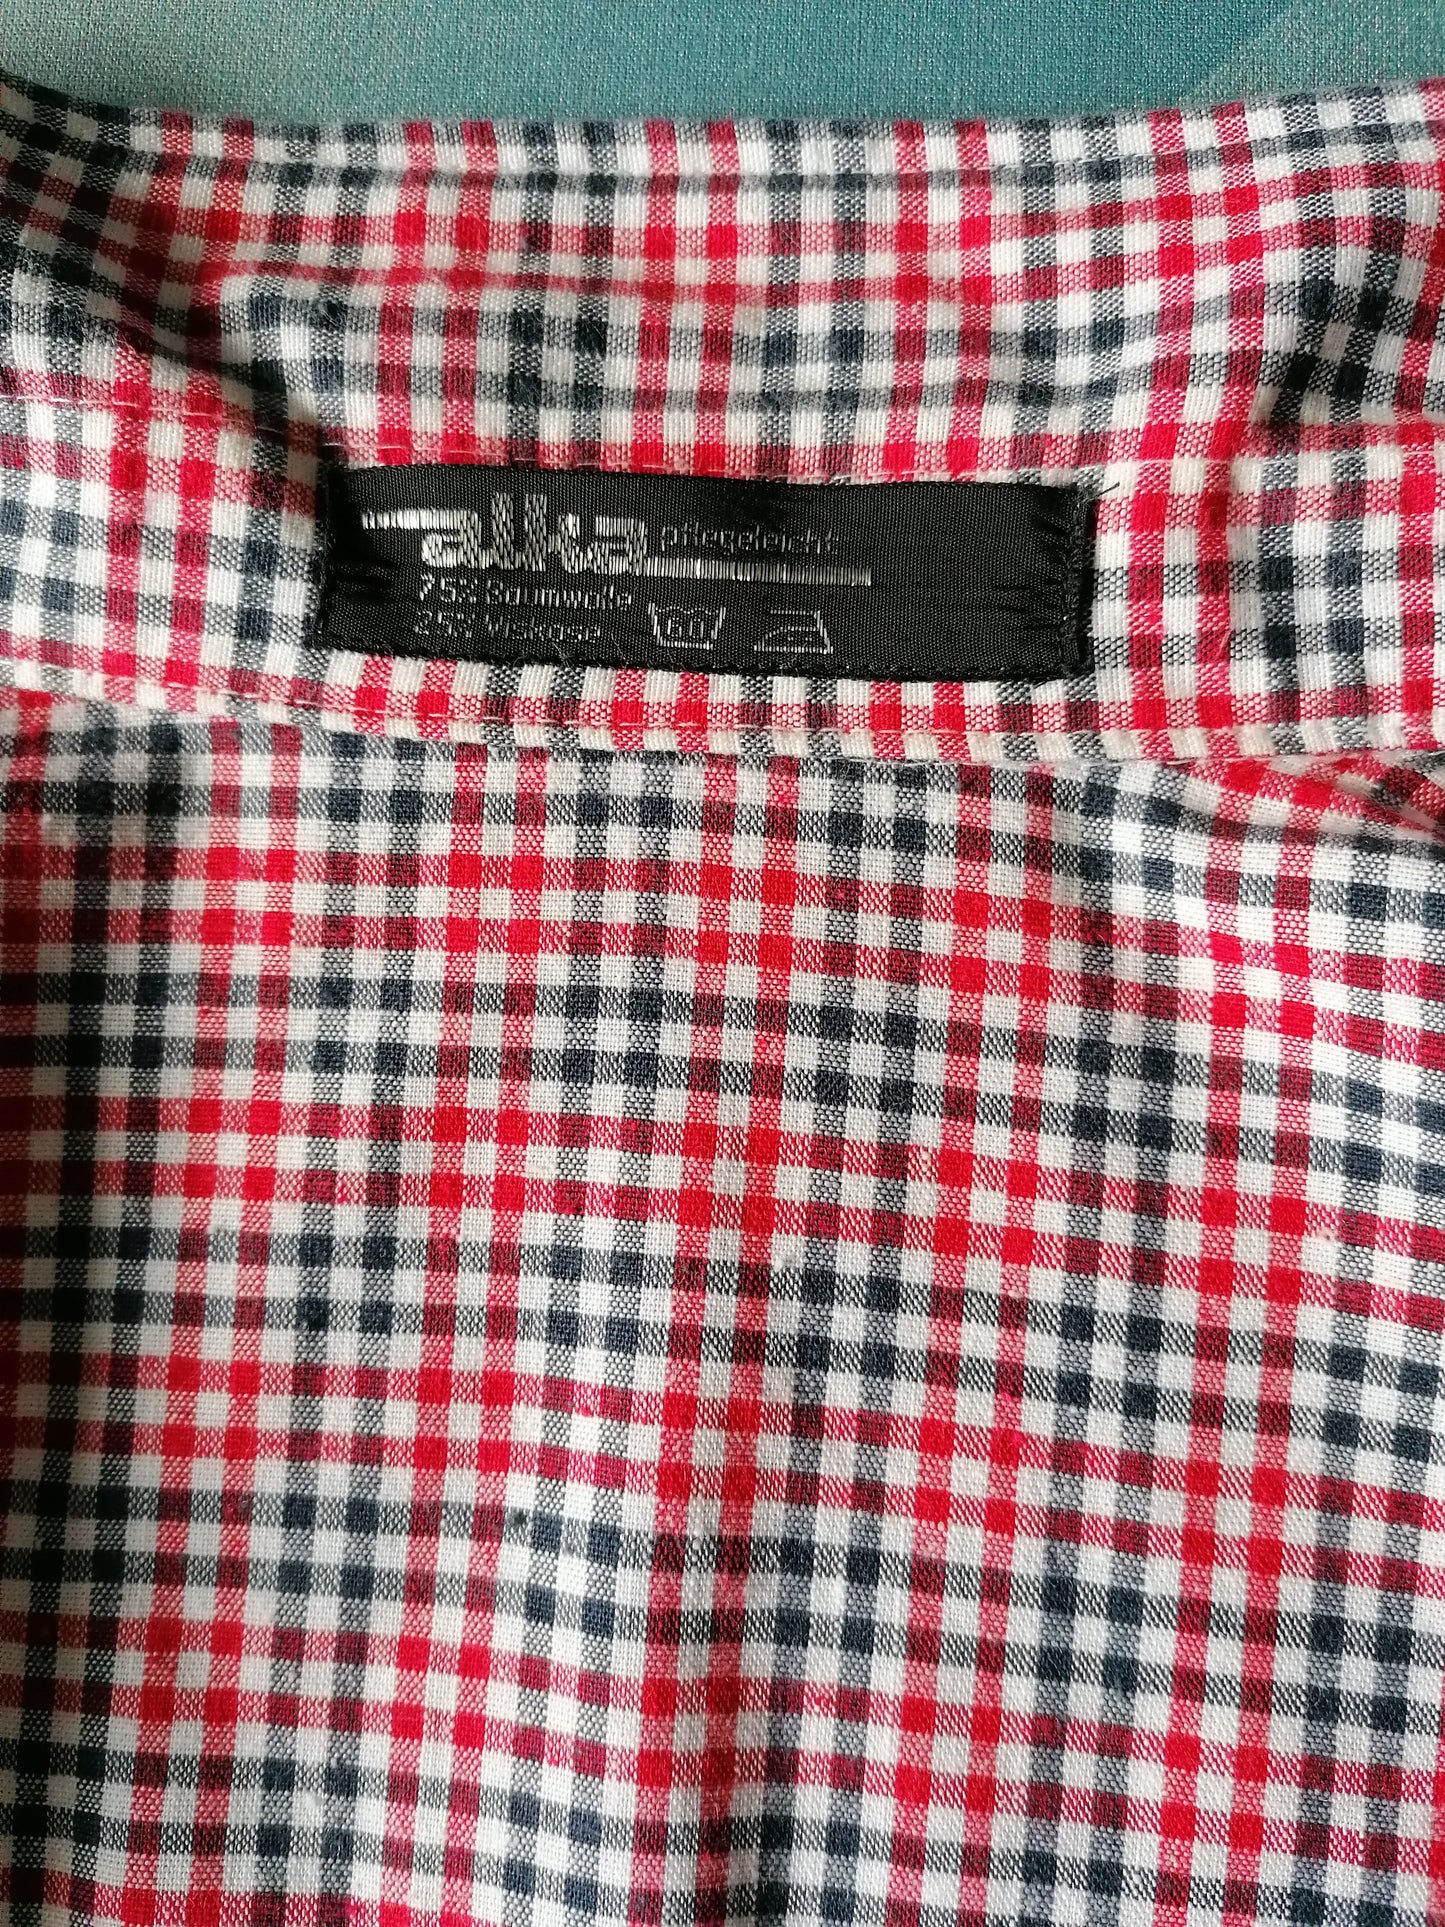 Vintage 70's Alka camisa de manga corta. Blanco azul rojo a cuadros. Tamaño XL. 75% algodón y 25% viscosa